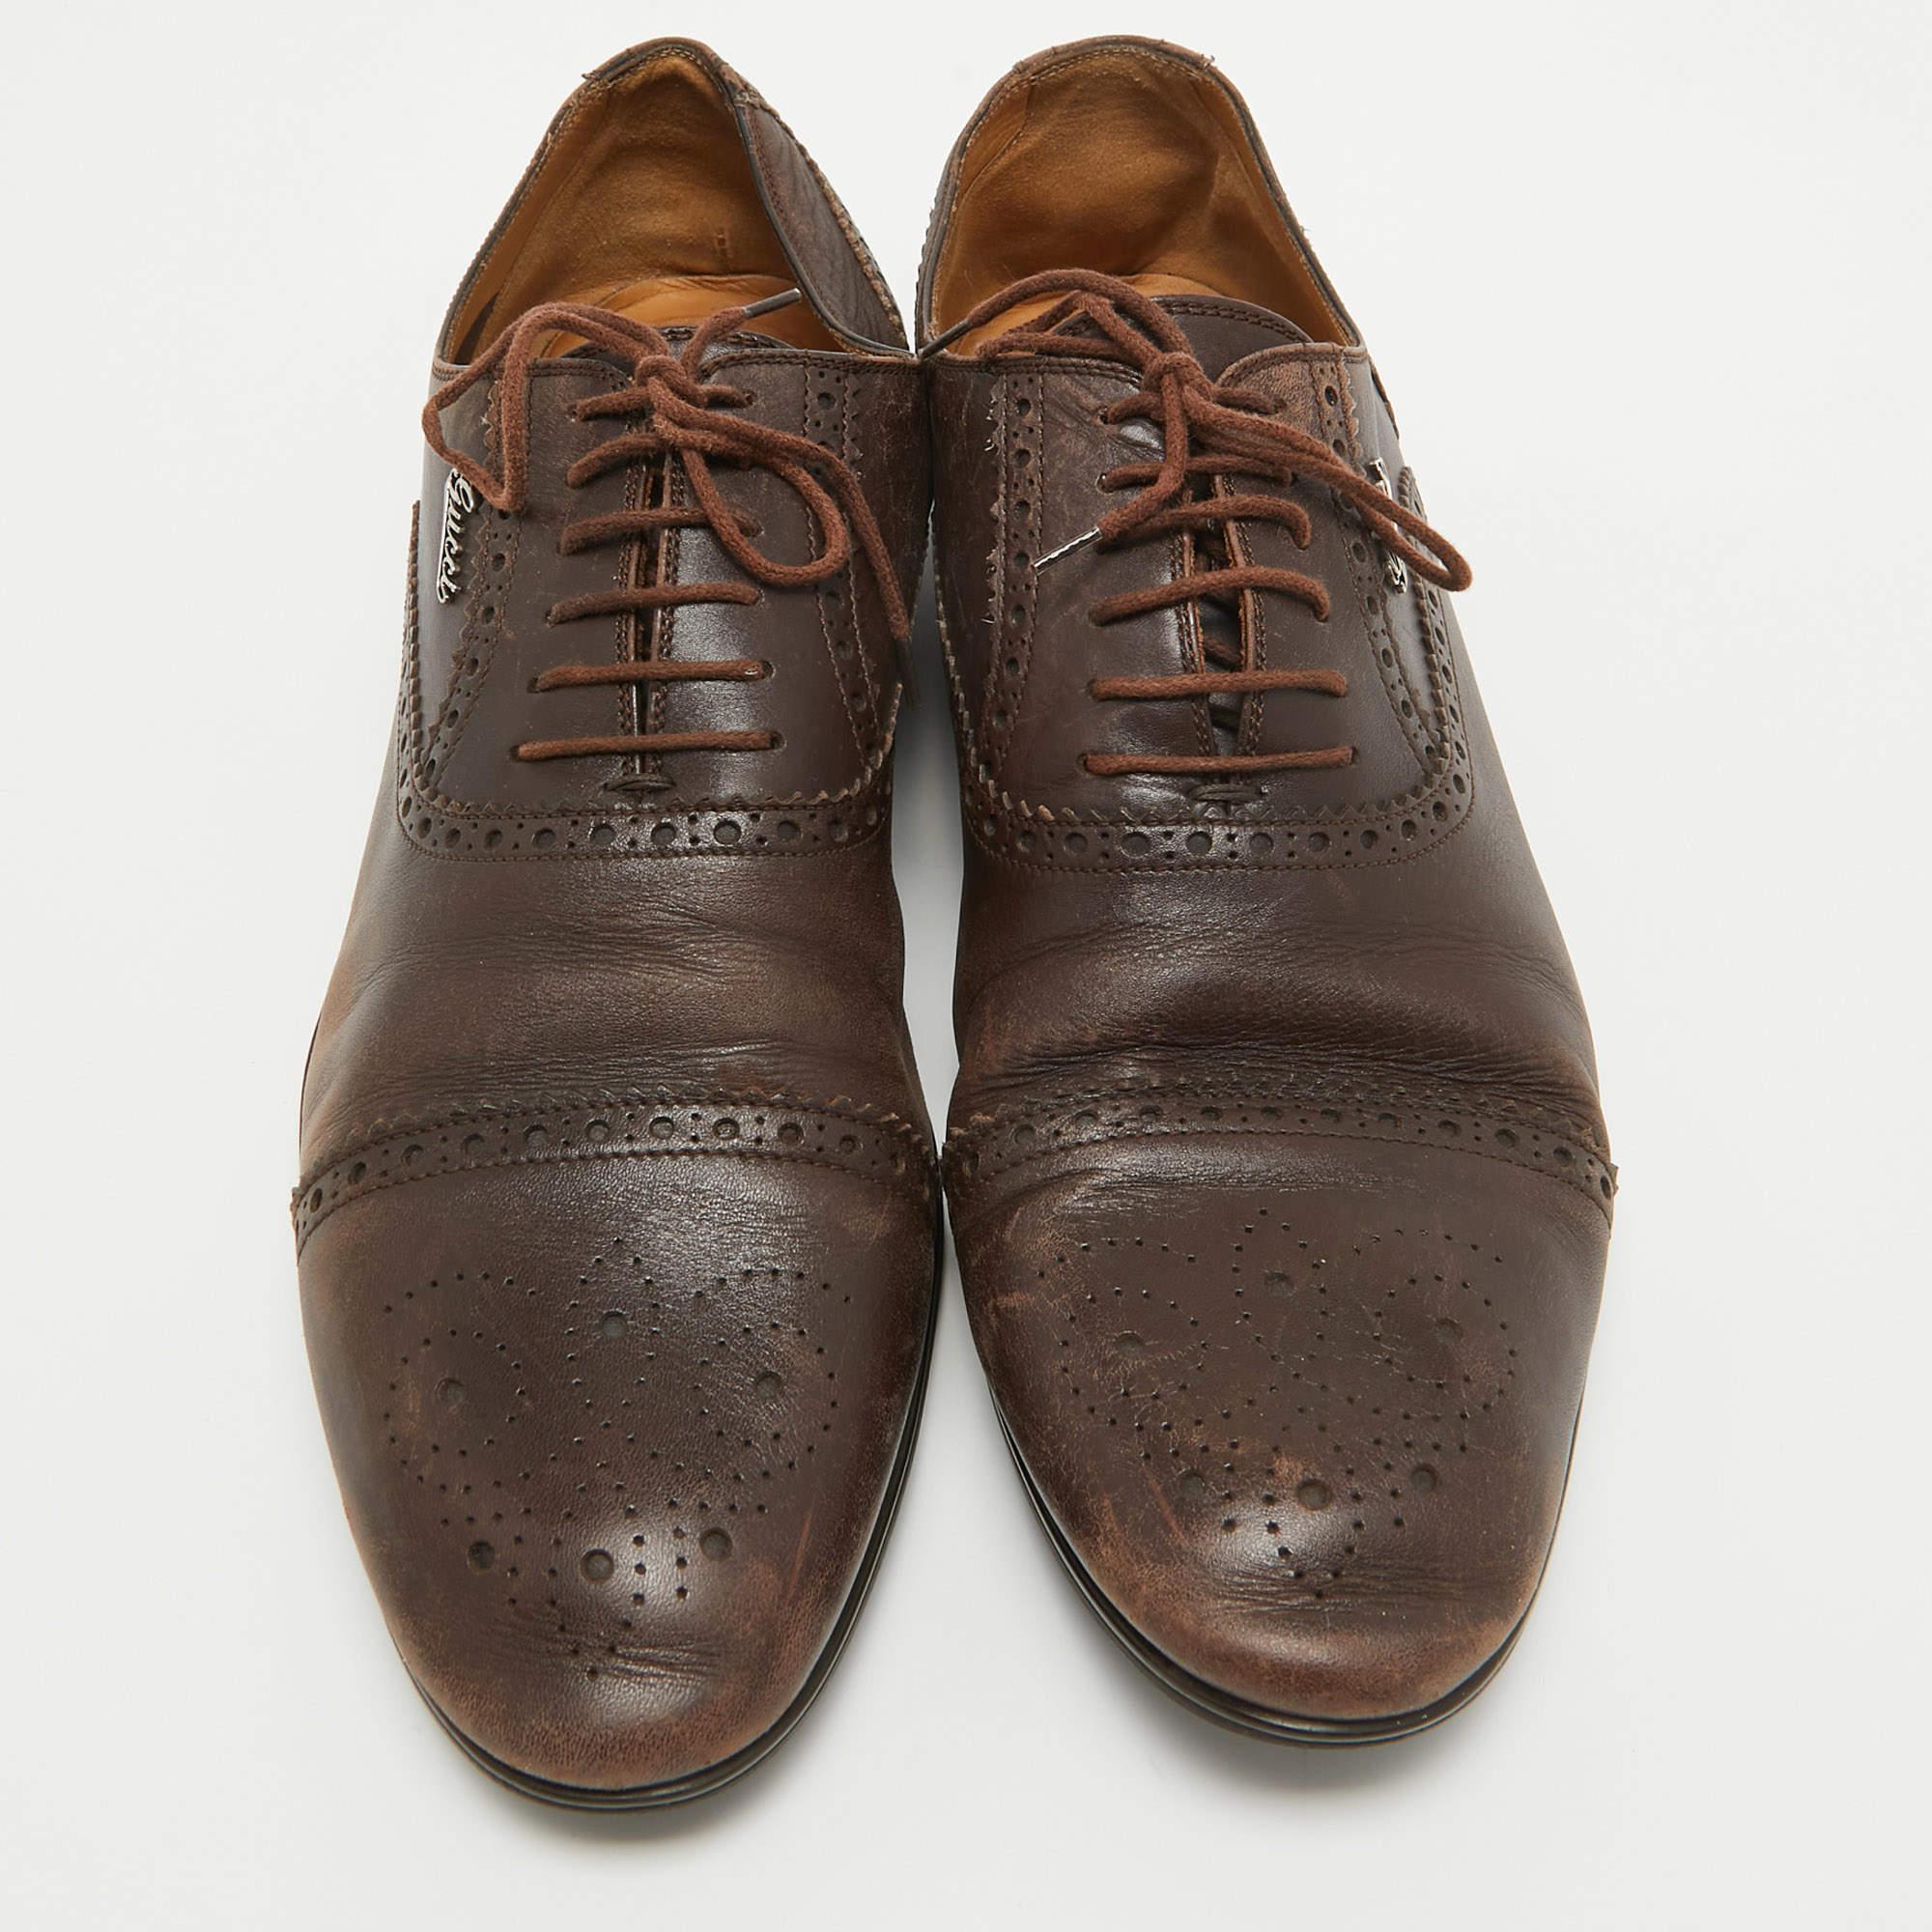 Dieses Paar Gucci Oxfords für Herren ist eine unverzichtbare Ergänzung für Ihre Schuhsammlung. Die makellos gefertigten Schuhe sind so konstruiert, dass sie Ihnen einen polierten Look verleihen.

